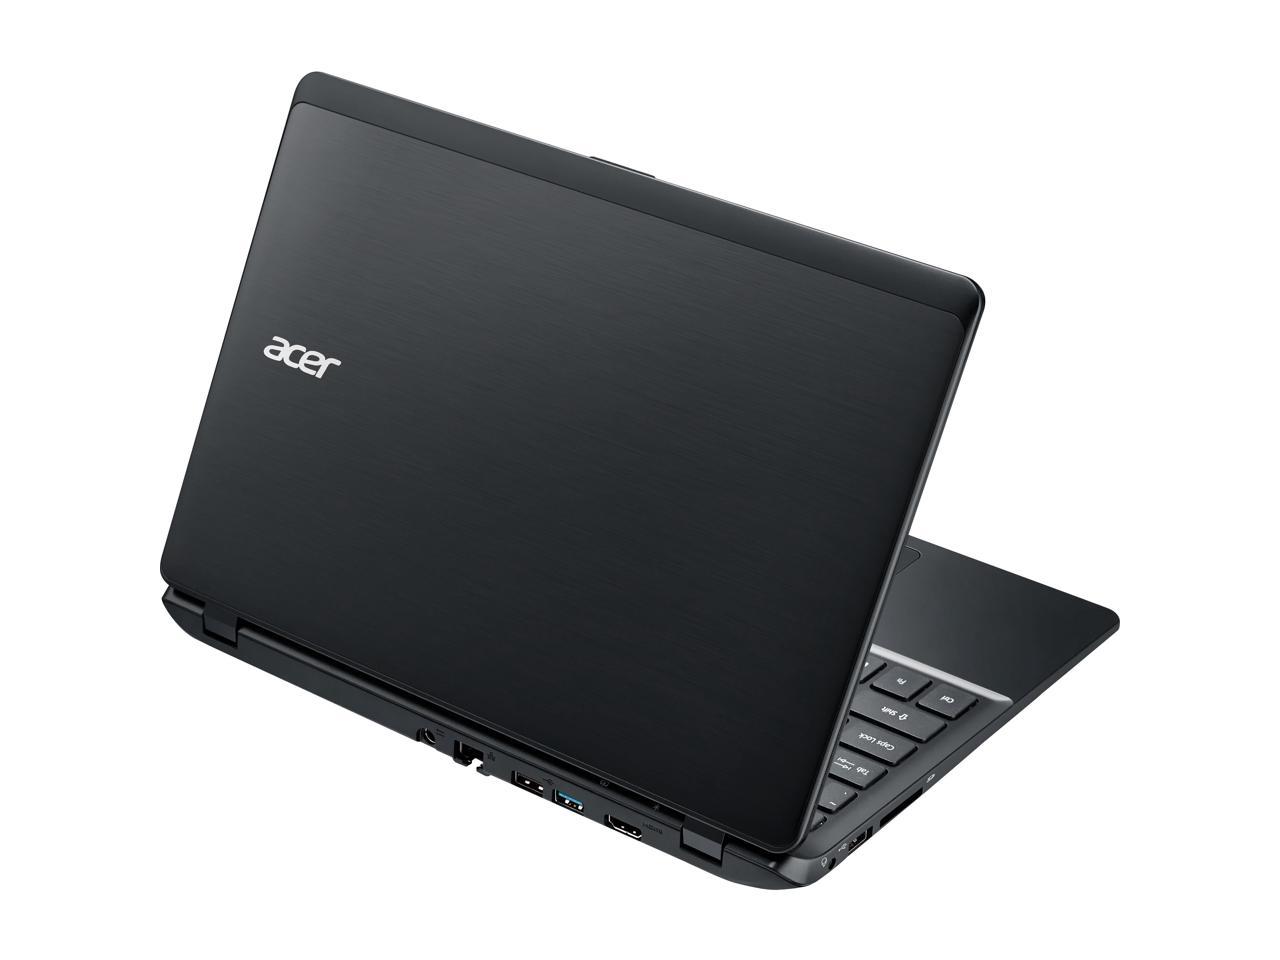 Acer aspire 521. Acer Aspire b115. Acer e1 570g 33214g50mnkk. TRAVELMATE b115 Acer. Acer Aspire e1-570g.